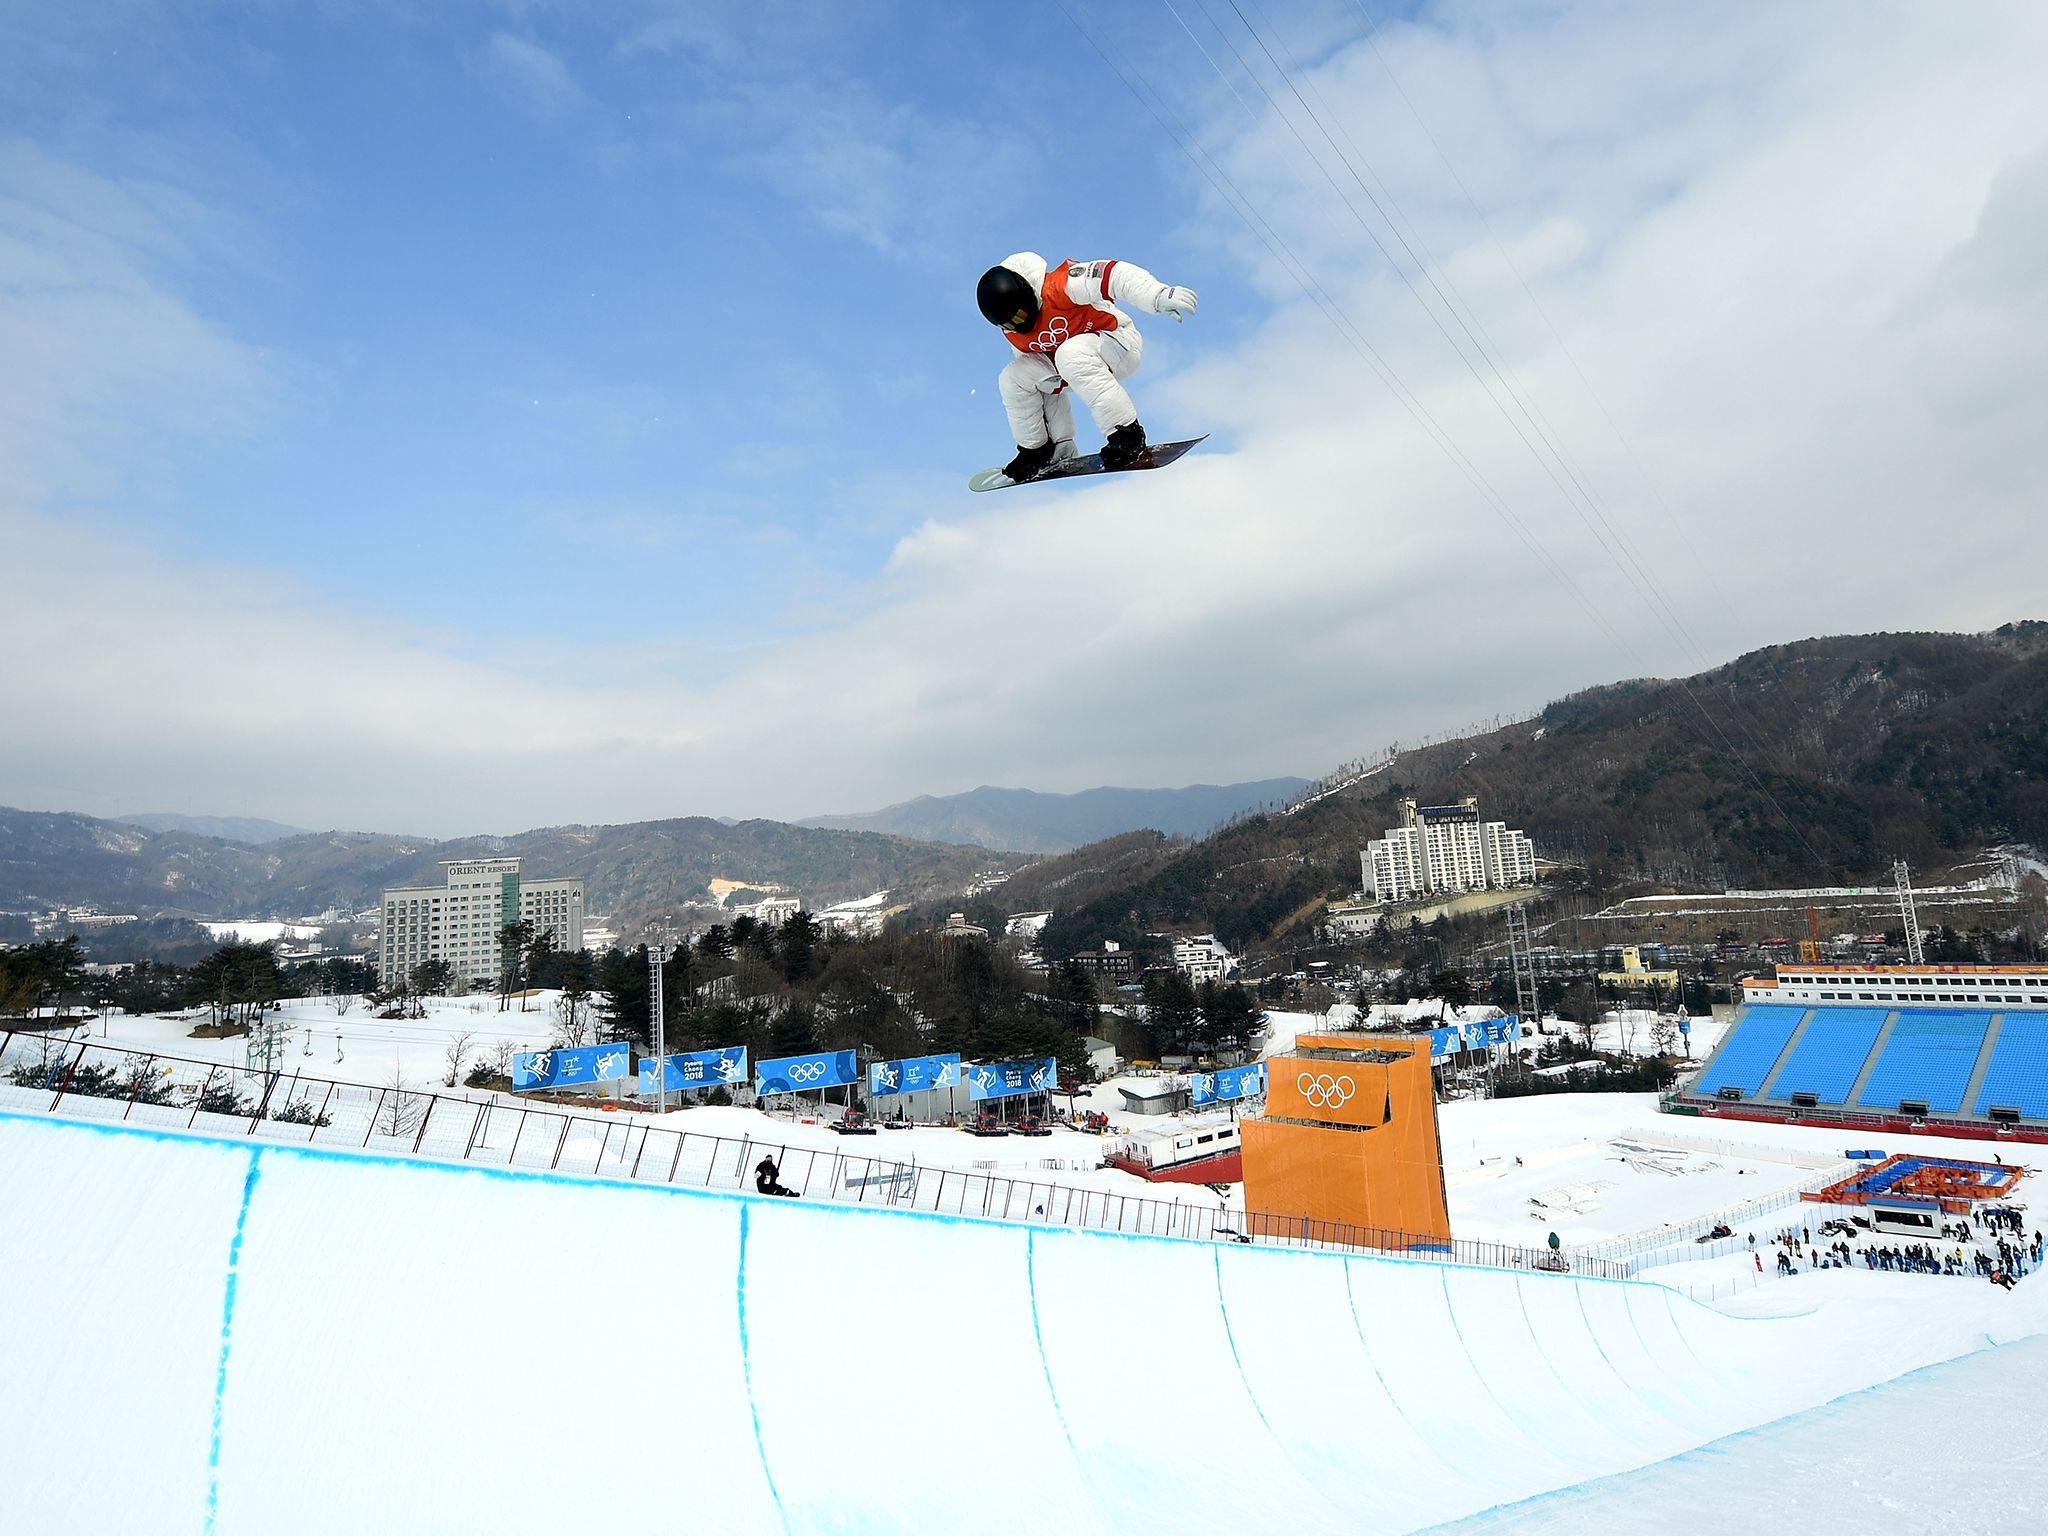 Winter Olympics 2018: Shaun White's bid to reclaim snowboard half